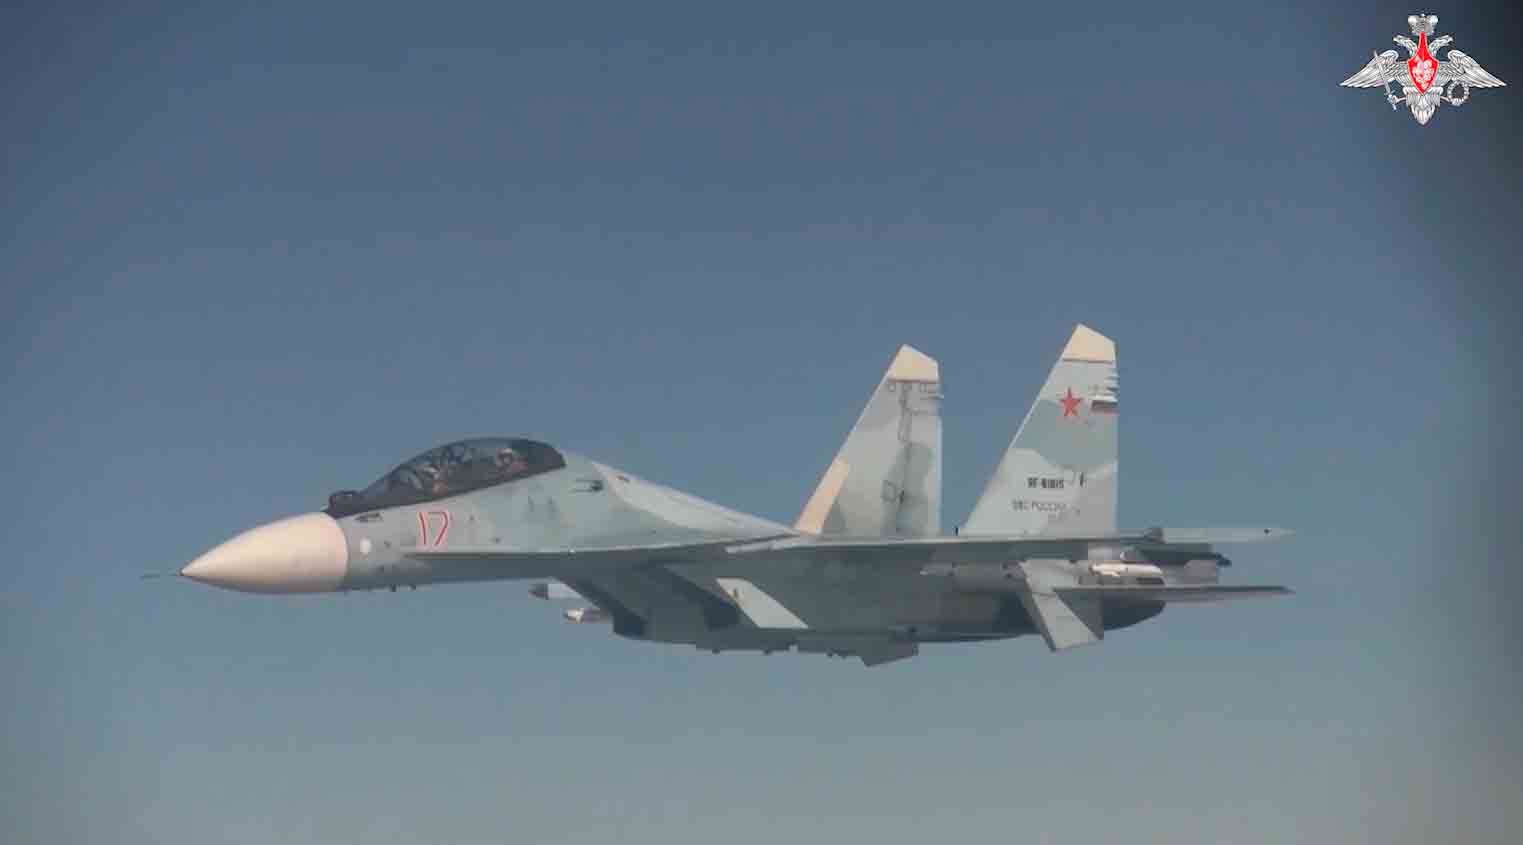 Le immagini rivelano che i bombardieri sono stati scortati dai caccia russi Su-35S e Su-30SM